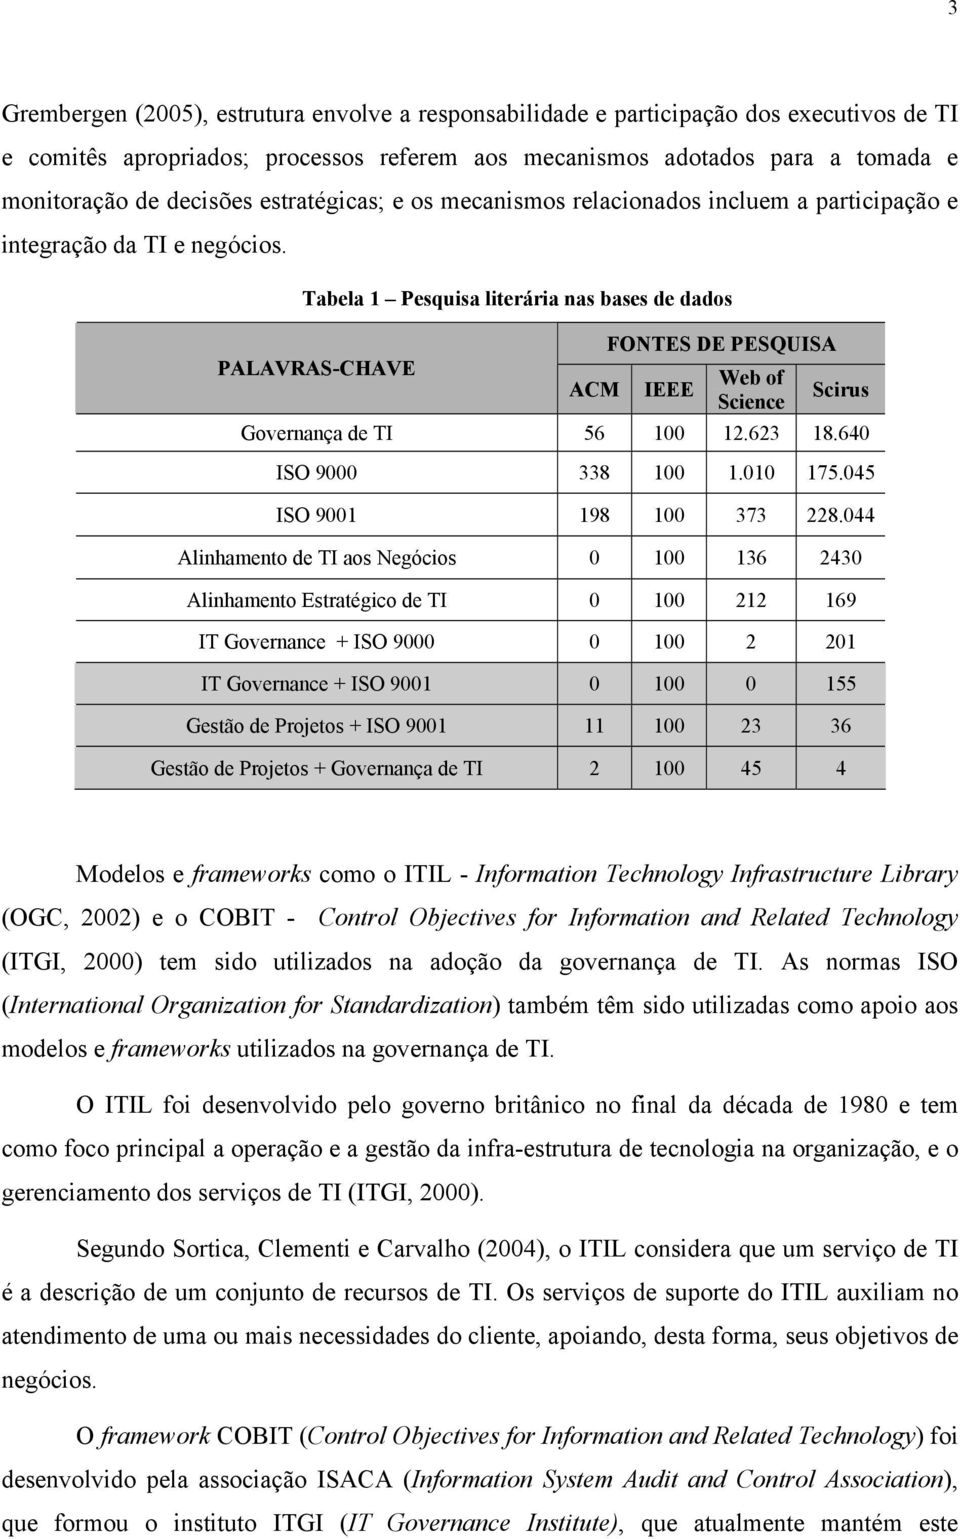 Tabela 1 Pesquisa literária nas bases de dados FONTES DE PESQUISA PALAVRAS-CHAVE Web of ACM IEEE Scirus Science Governança de TI 56 100 12.623 18.640 ISO 9000 338 100 1.010 175.